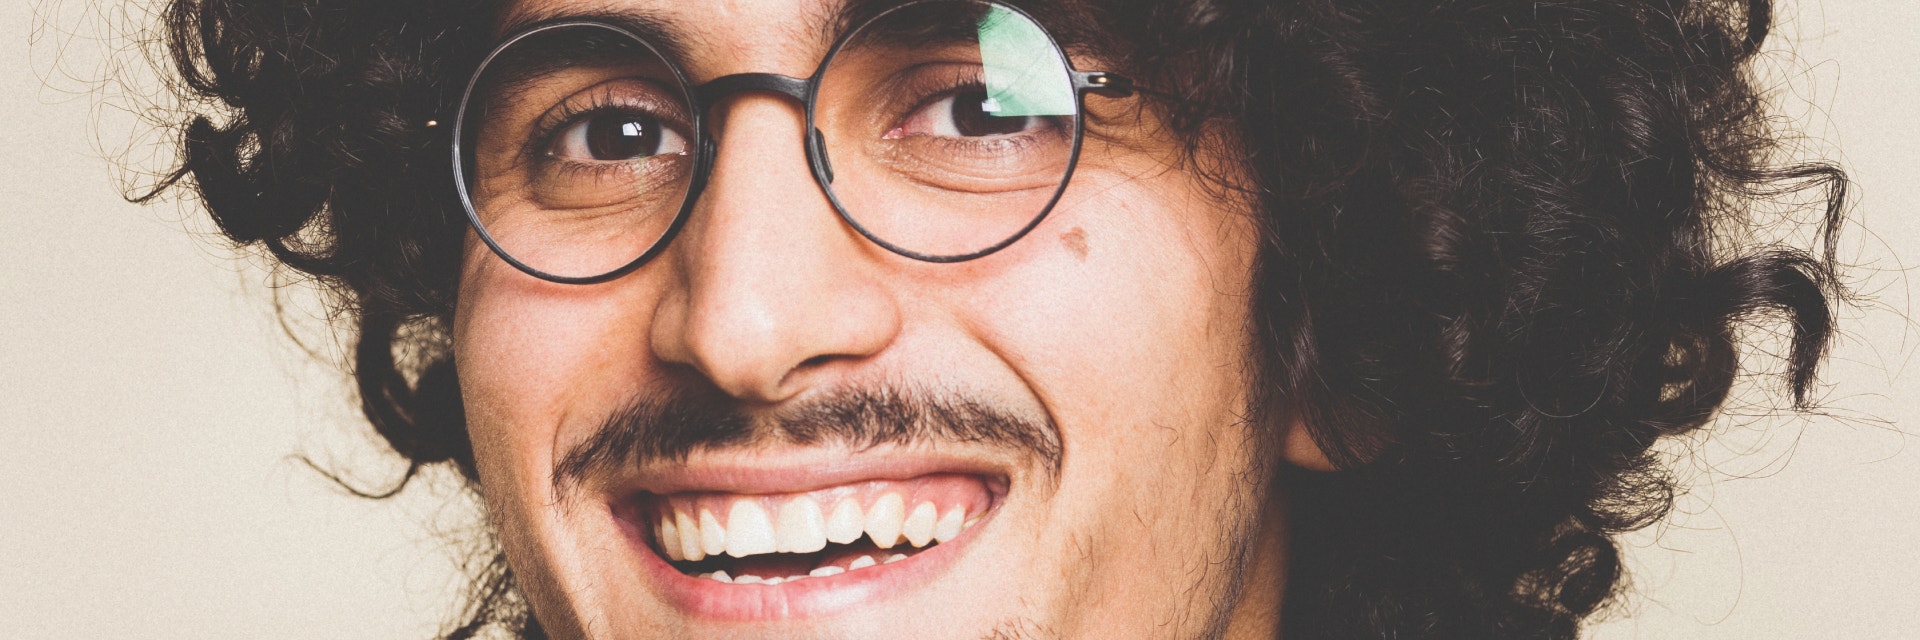 Hombre con pelo rizado y bigote sonriendo mientras lleva unas gafas weareannu impresas en 3D